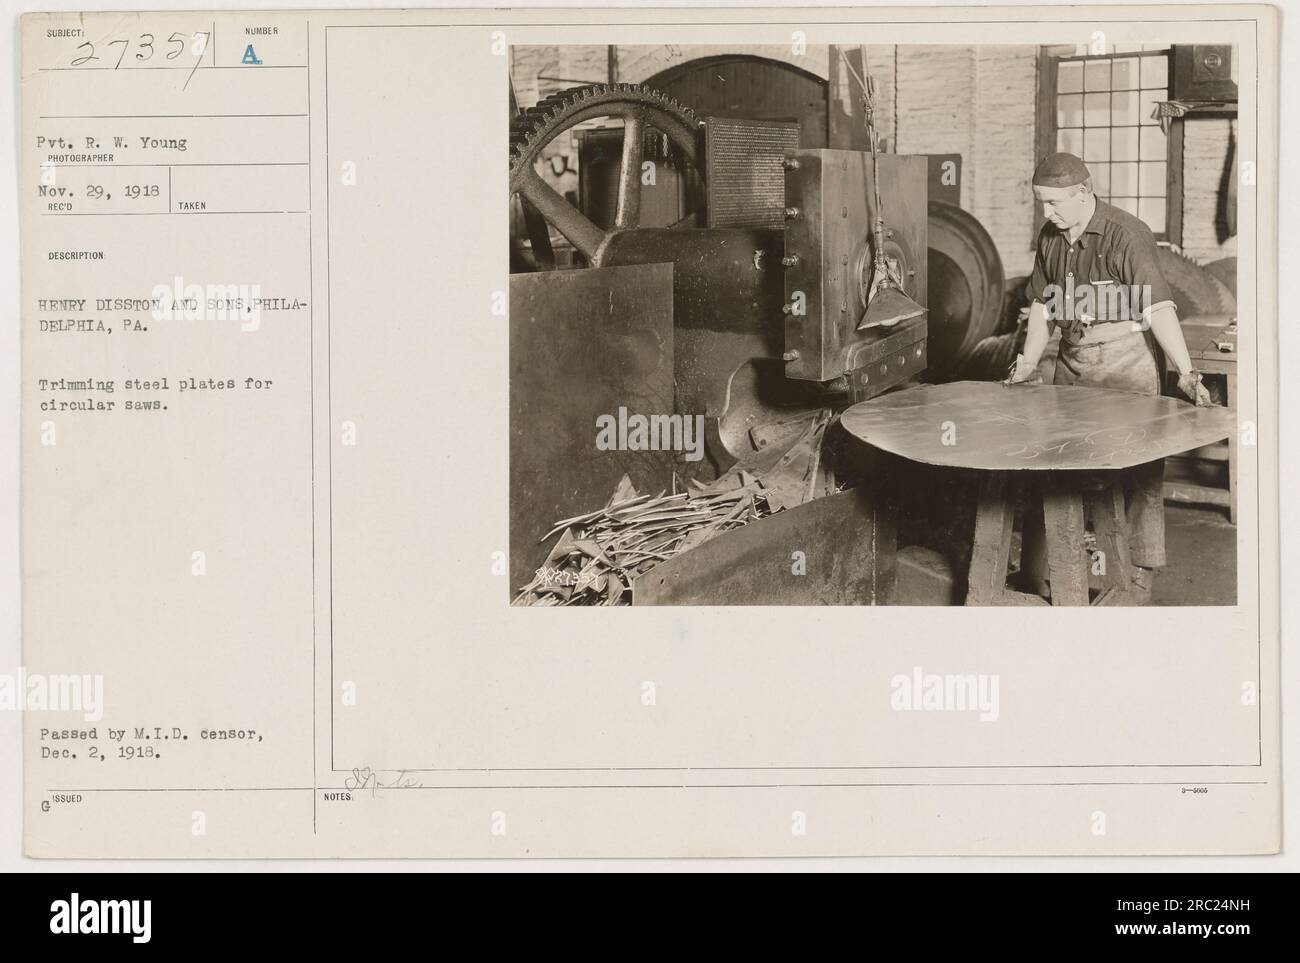 Soldat R.W. Young découpe des plaques d'acier pour scies circulaires chez Henry Disston and Sons à Philadelphie, PA. Cette photo a été prise le 29 novembre 1918. L'image a été approuvée par le censeur de la Division de l'information militaire le 2 décembre 1918. Banque D'Images